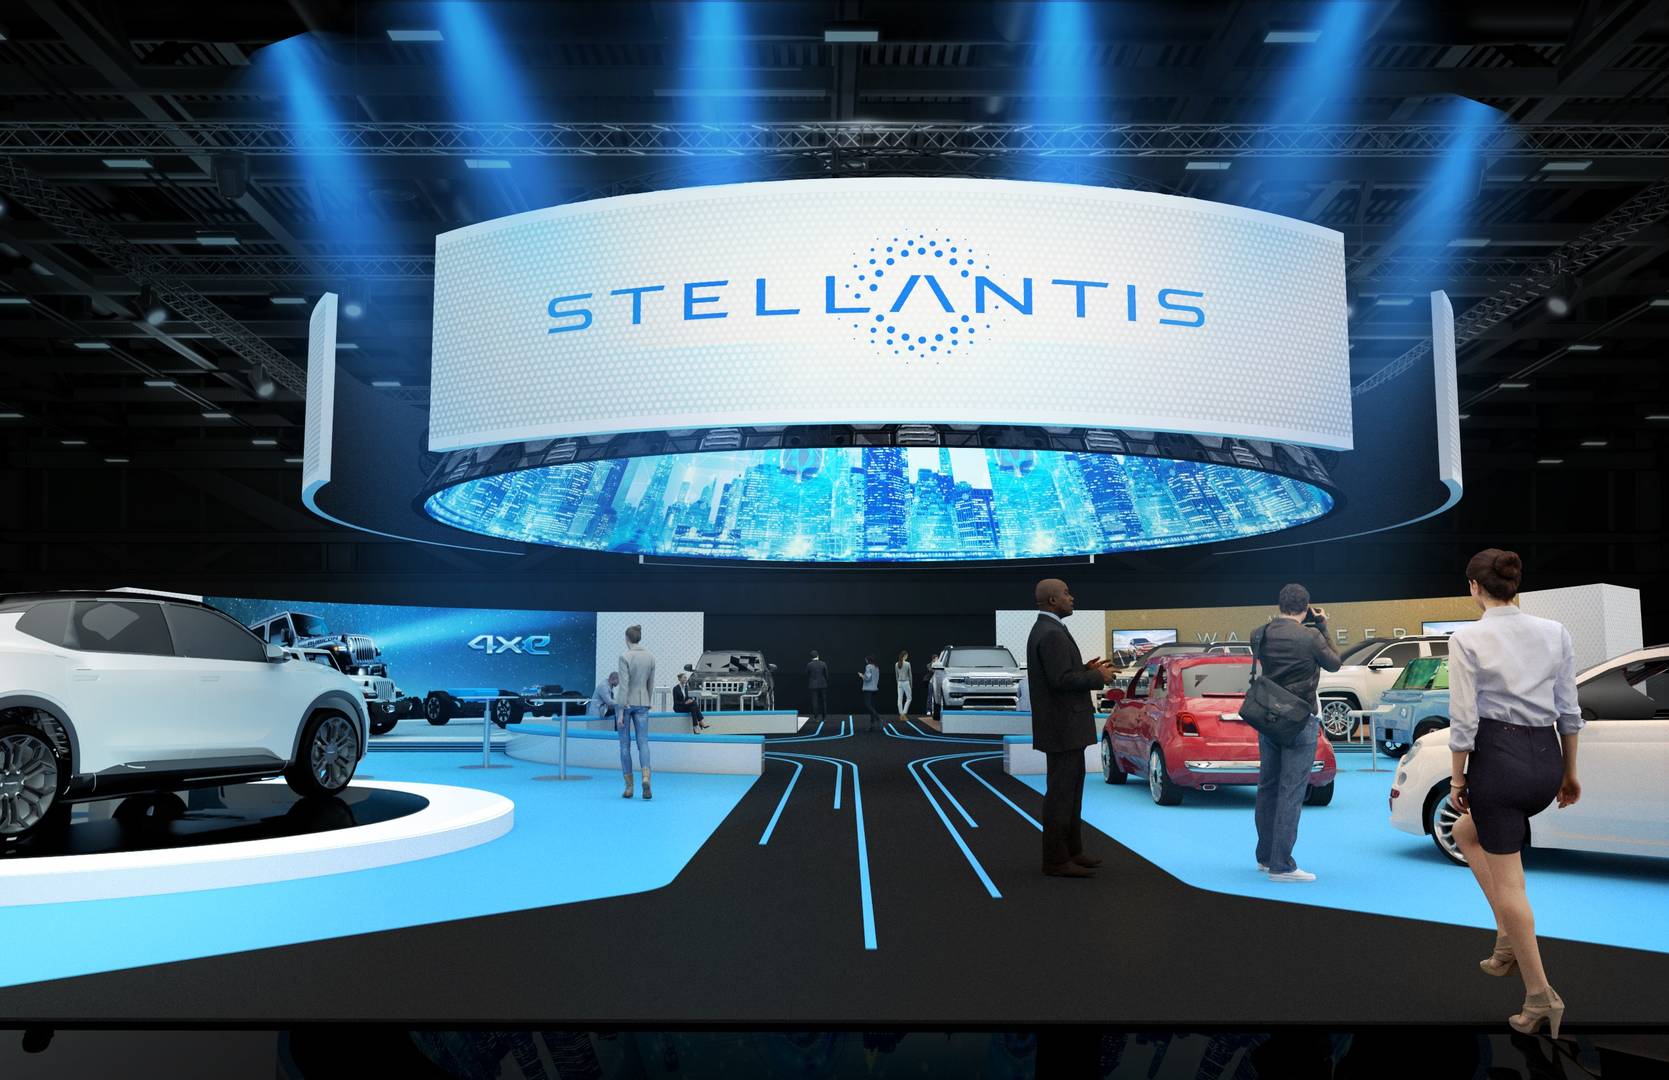 Павильон Stellantis на выставке CES 2022